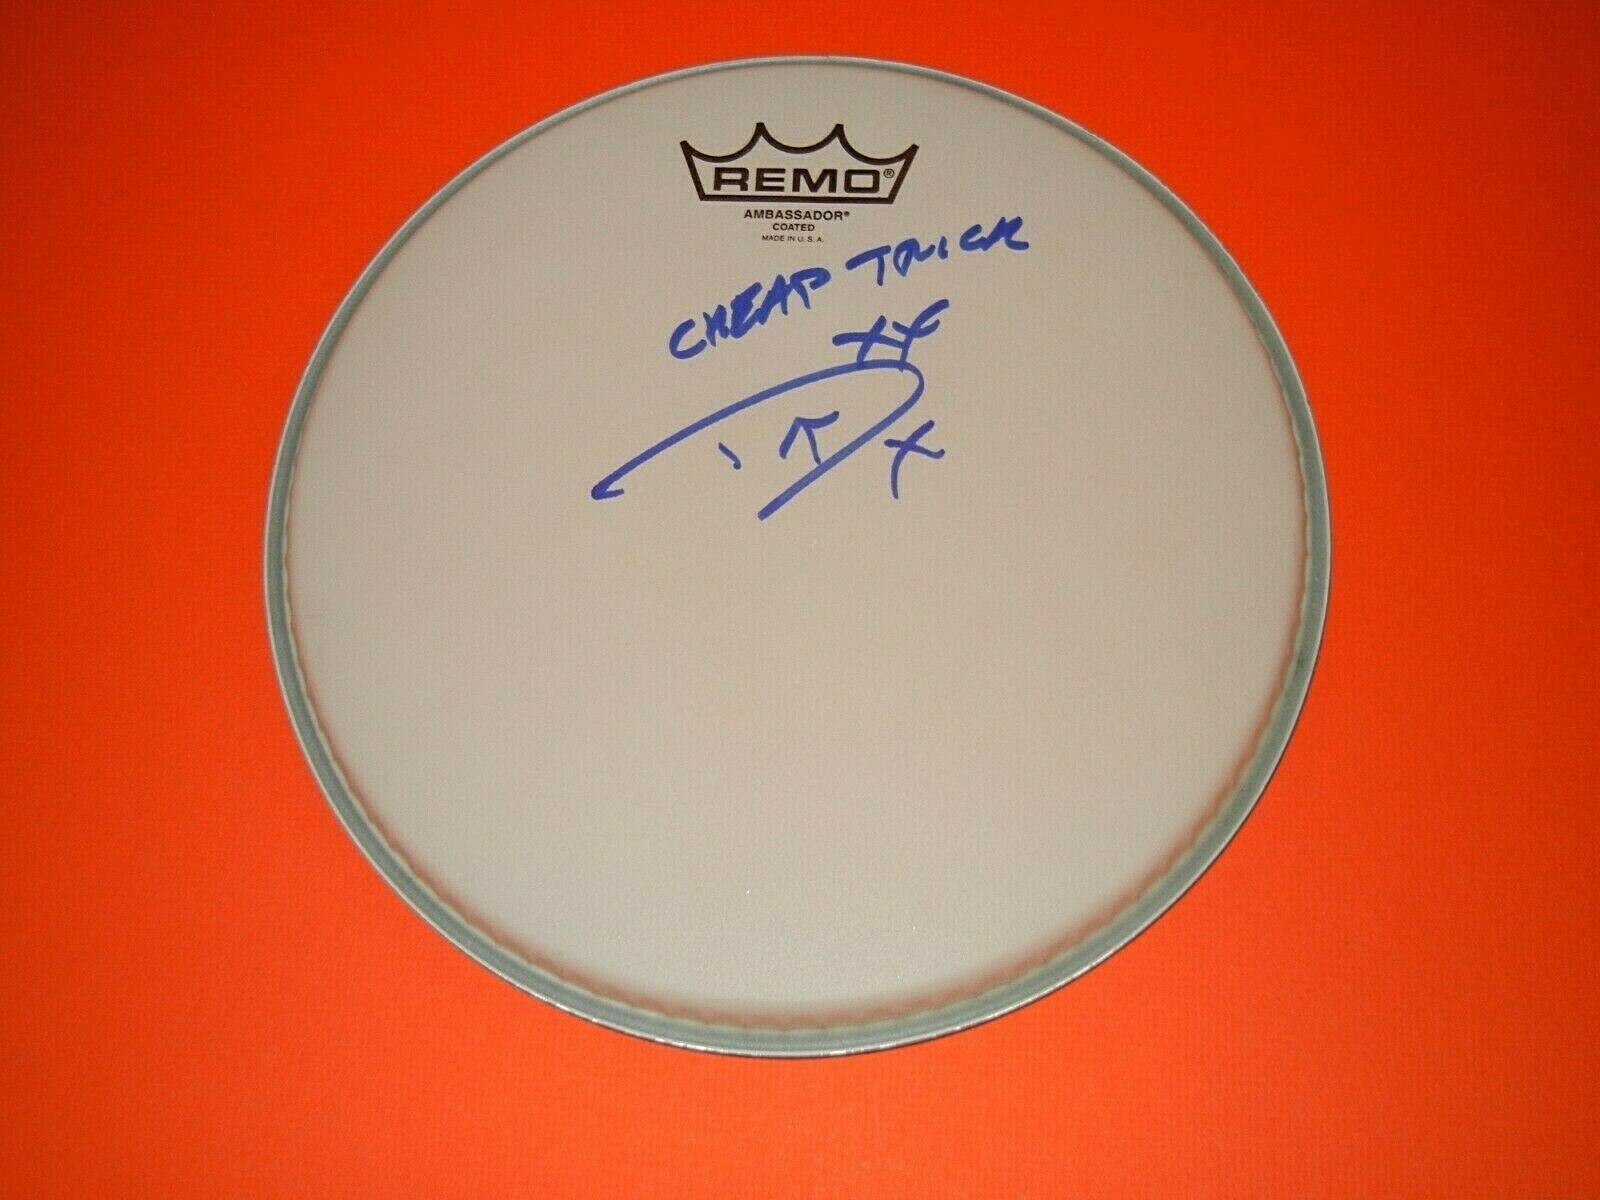 Daxx Nielson Drummer "cheap Trick" Signed Drumhead Coa